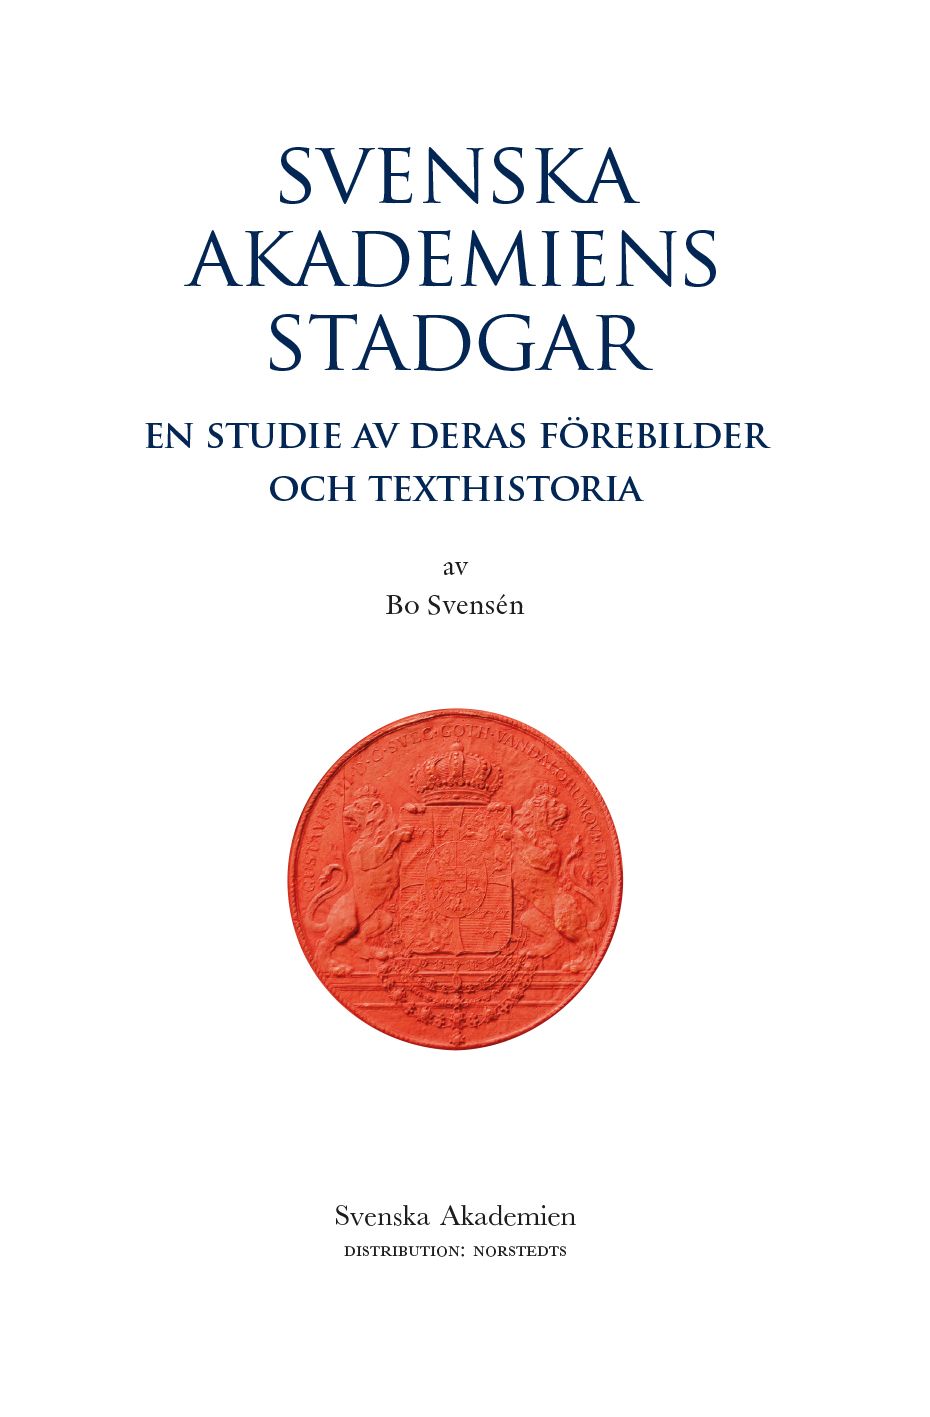 En studie av Akademiens stadgars texthistoriska förebilder